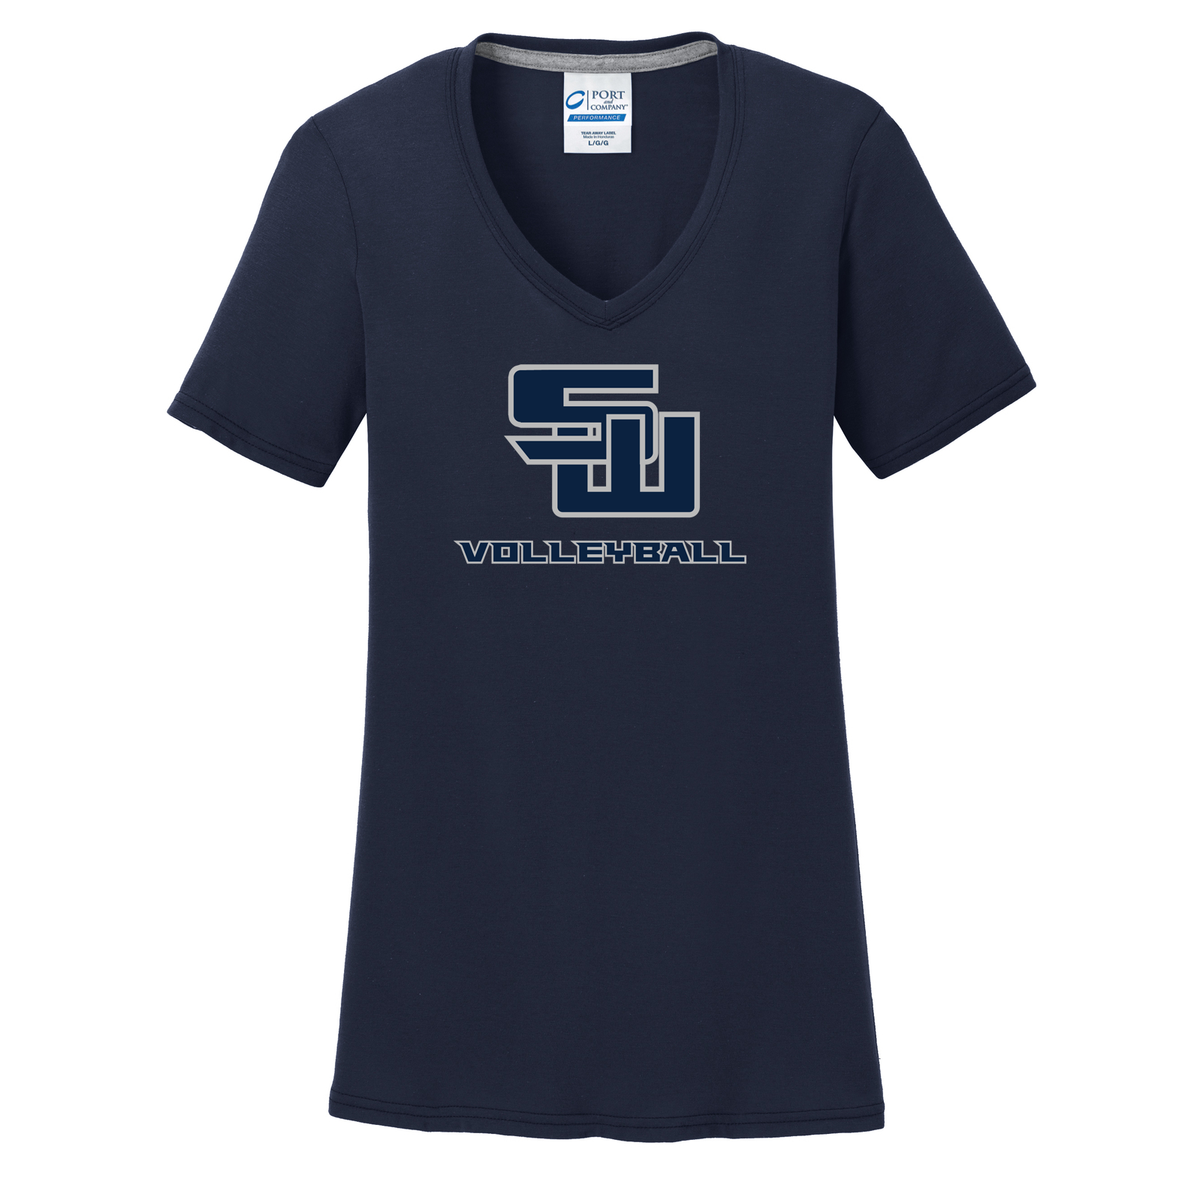 Smithtown West Volleyball Women's T-Shirt